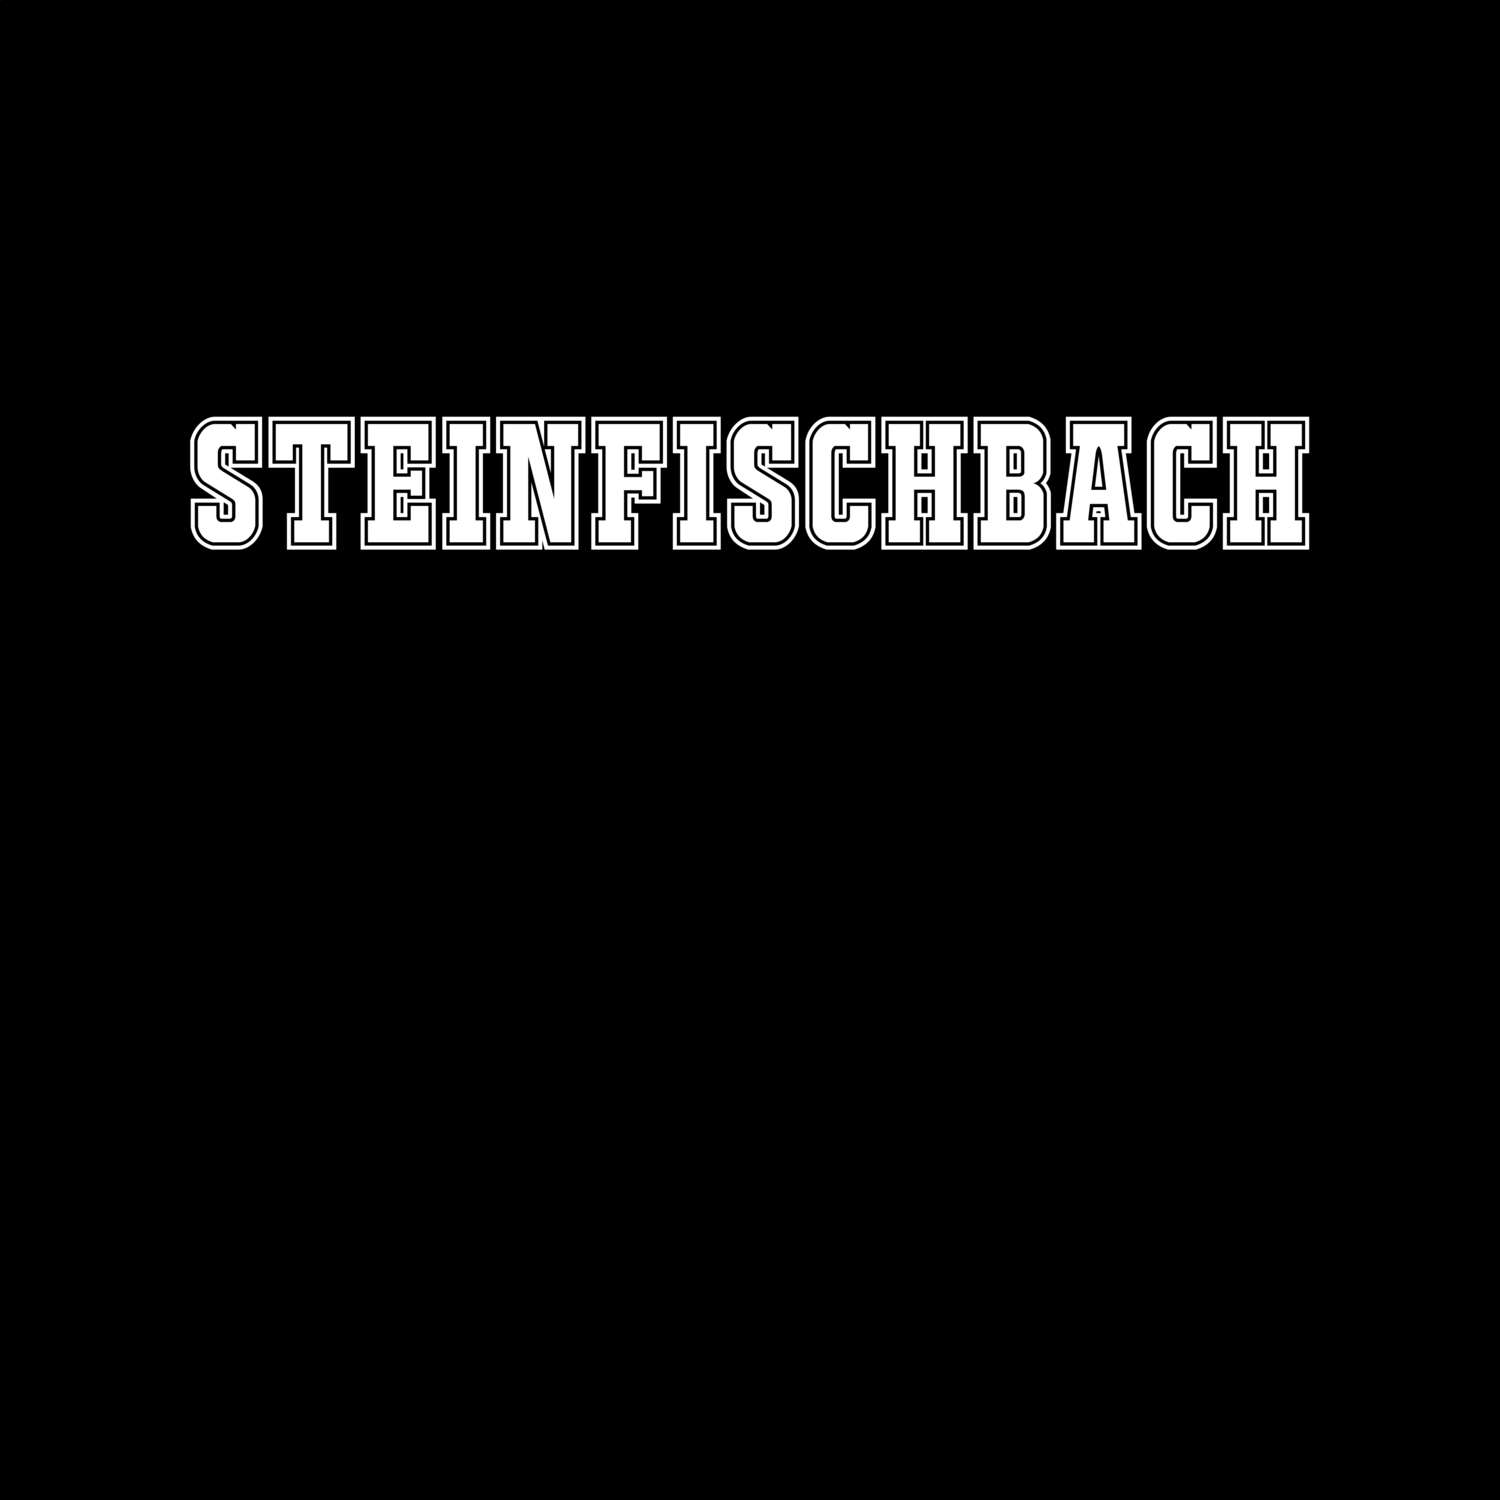 Steinfischbach T-Shirt »Classic«